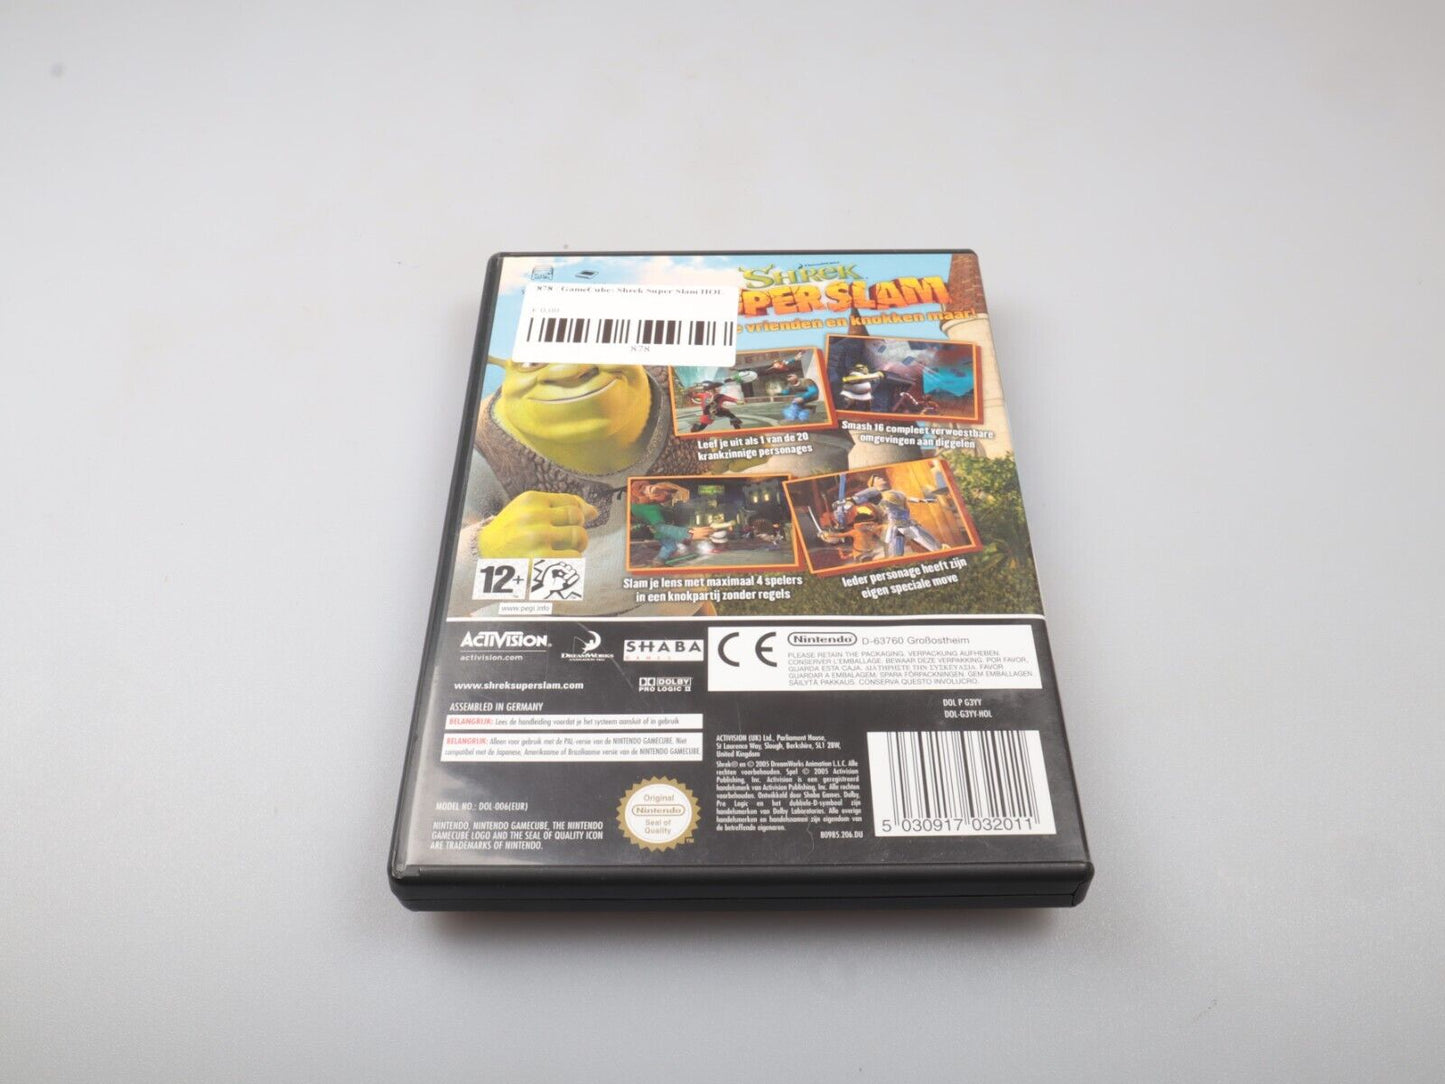 GameCube | Shrek Super Slam (HOL) (PAL) 